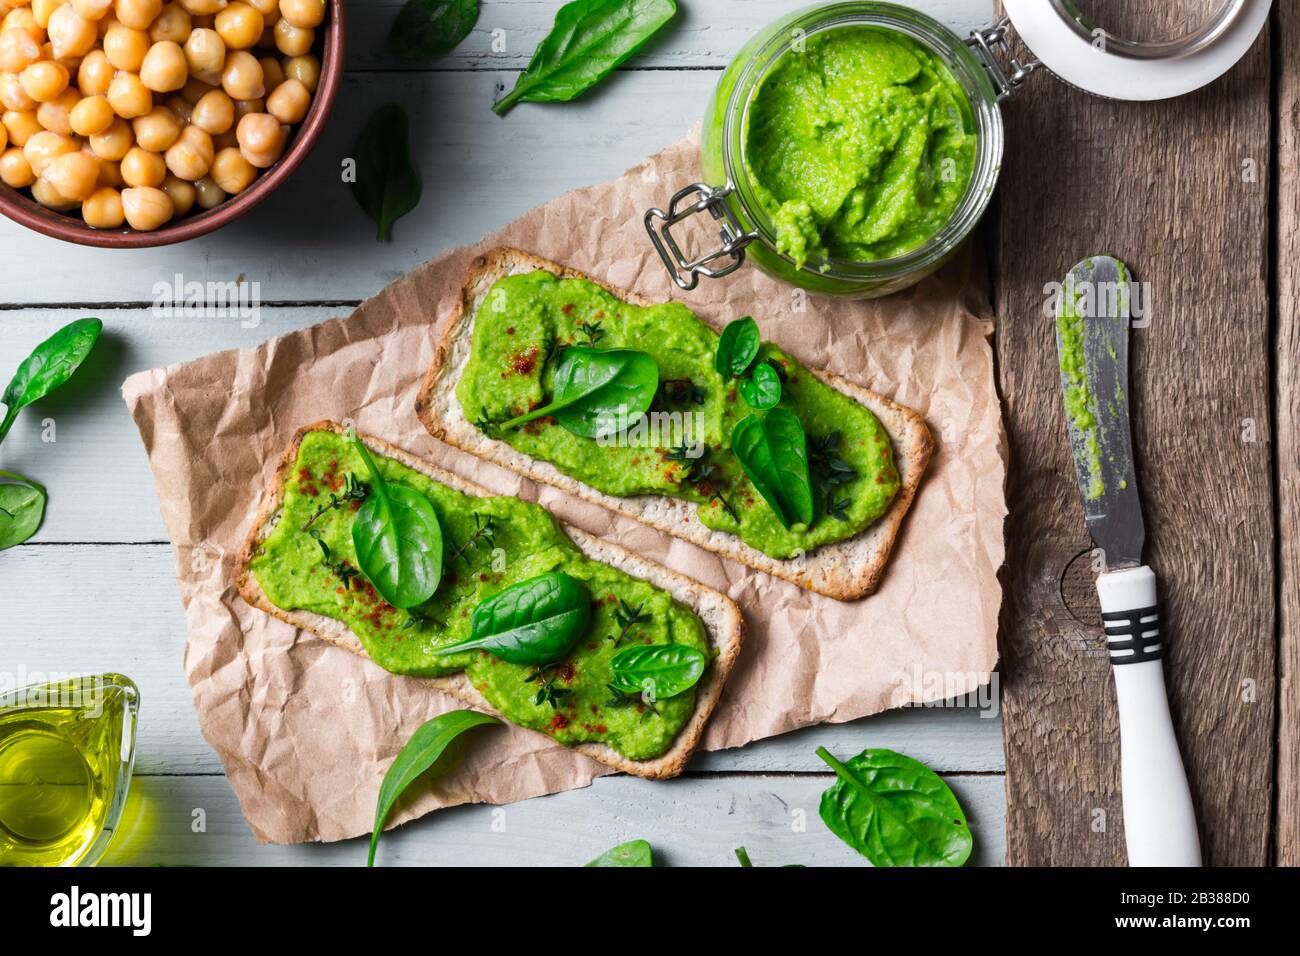 Deux crackers avec humus aux épinards verts sur table en bois. Pose plate. Concept de houmous. Photographie alimentaire Banque D'Images